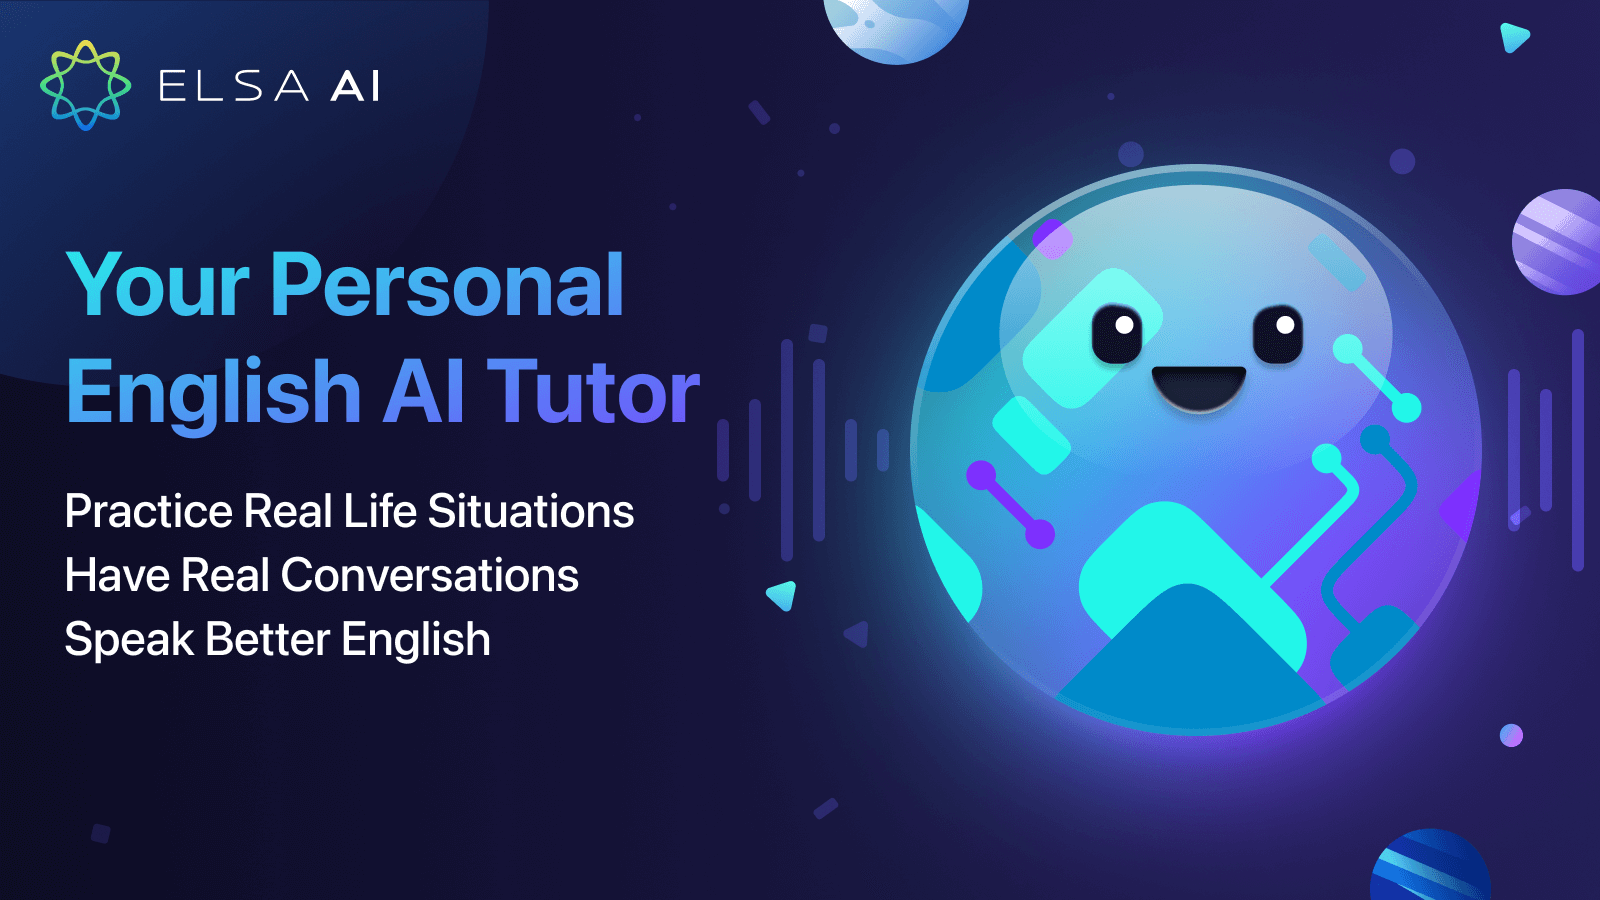  Ứng dụng học tiếng Anh Elsa Speak sử dụng AI để nhận diện giọng nói và phát âm của người học. Sau đó ứng dụng tiến hành phân tích dữ liệu để đưa ra các bài học và bài tập phù hợp để giúp người học cải thiện khả năng phát âm của mình.